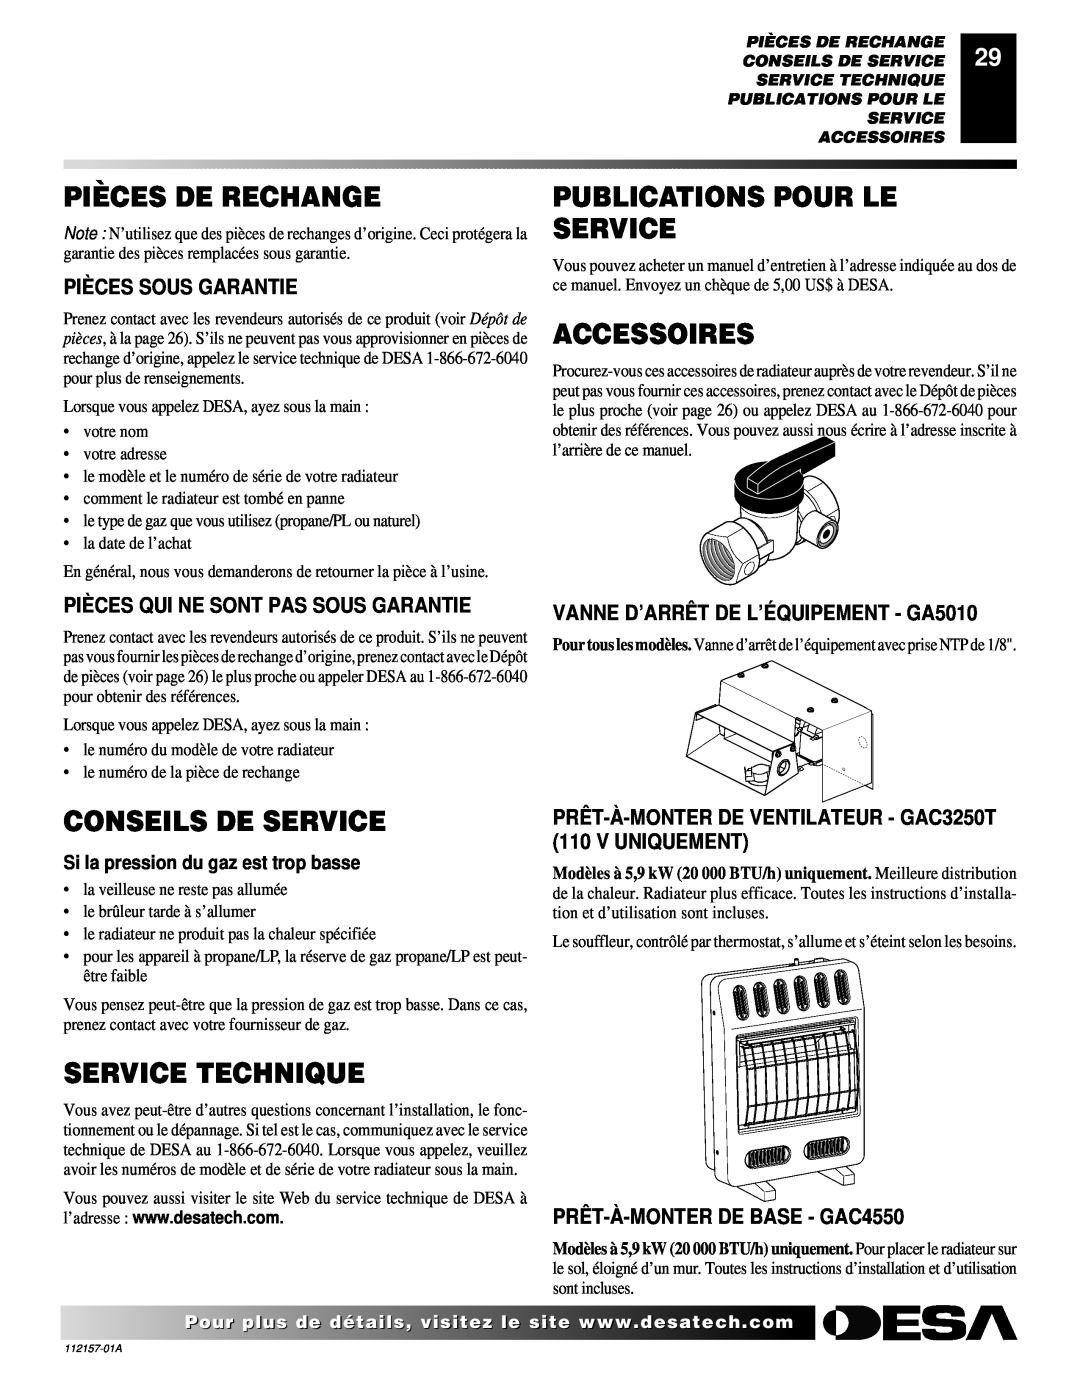 Desa GCP10TGCN20T Pièces De Rechange, Publications Pour Le Service, Accessoires, Conseils De Service, Service Technique 